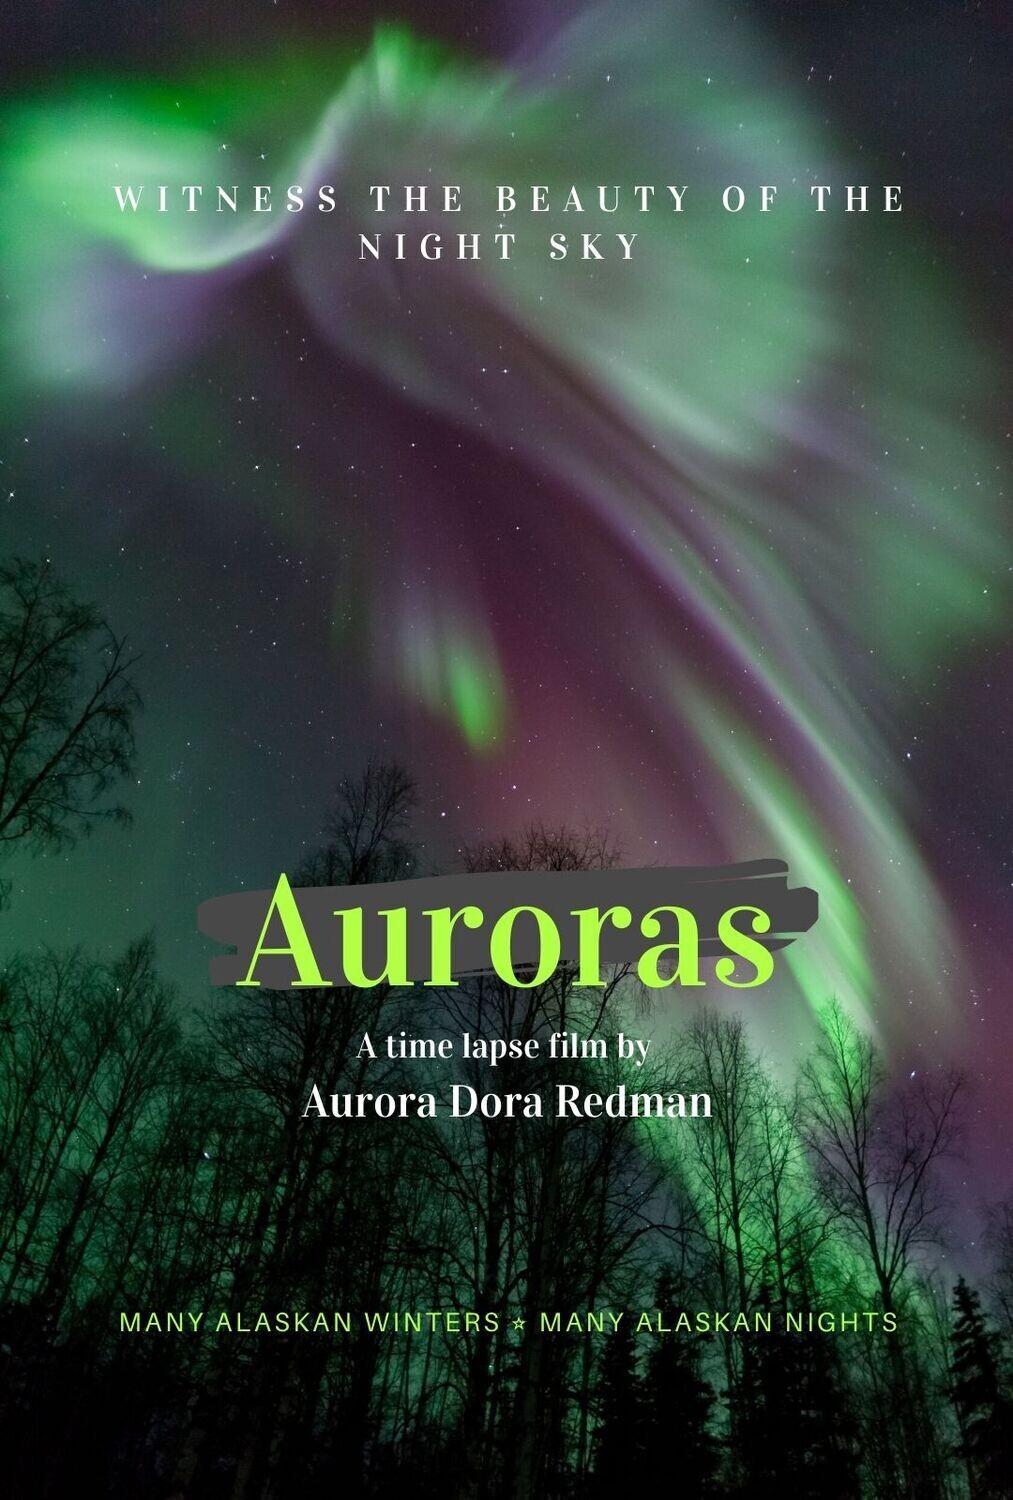 Auroras by Aurora Dora DVD